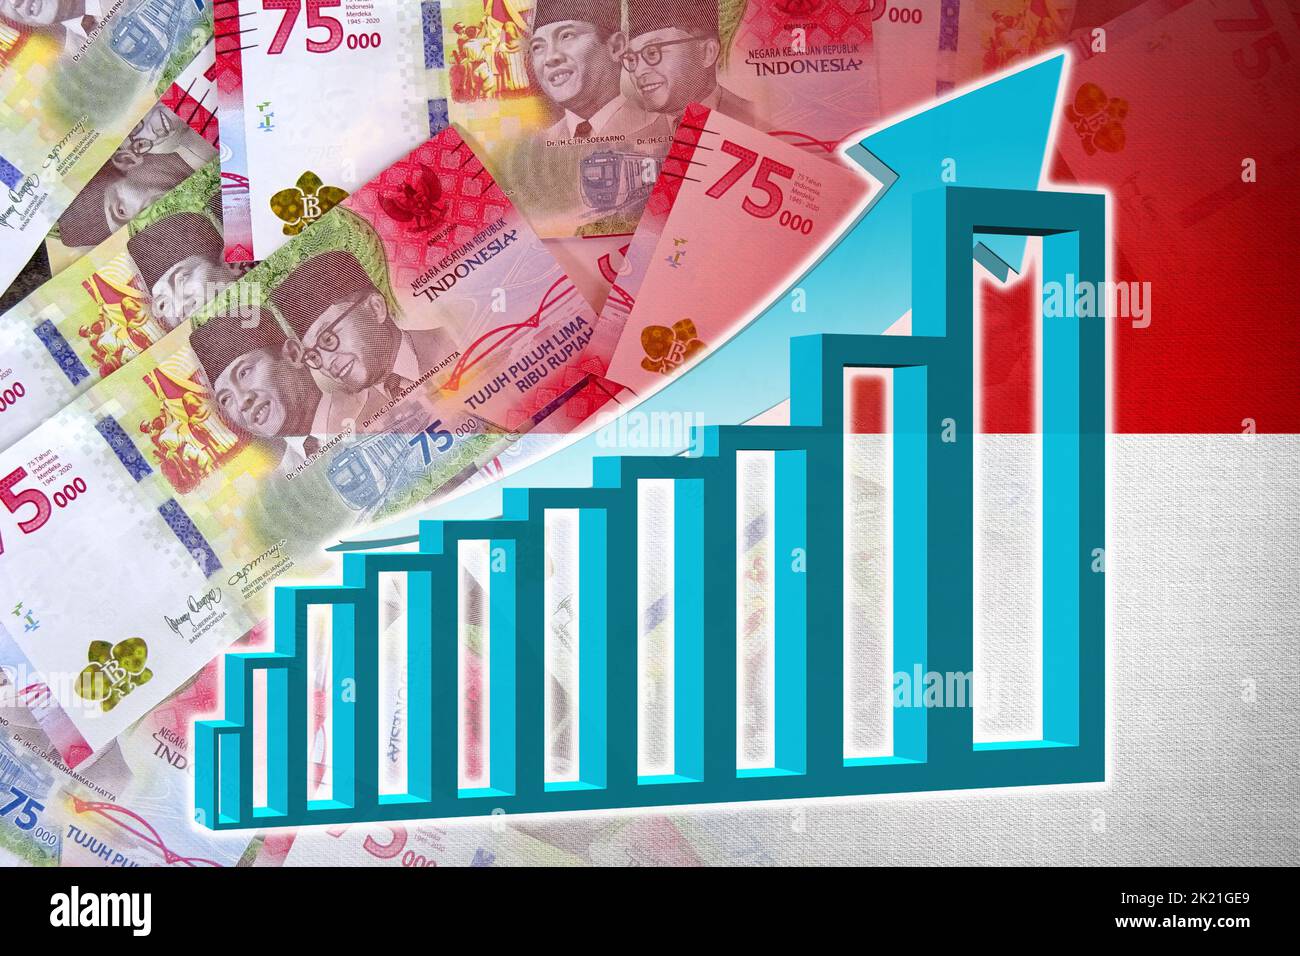 Wirtschaftsdiagramm: Steigender Pfeil, Bargeld indonesische Rupiah-Banknoten und indonesische Flagge (Geld, Wirtschaft, Unternehmen, Finanzen, Krise) Stockfoto